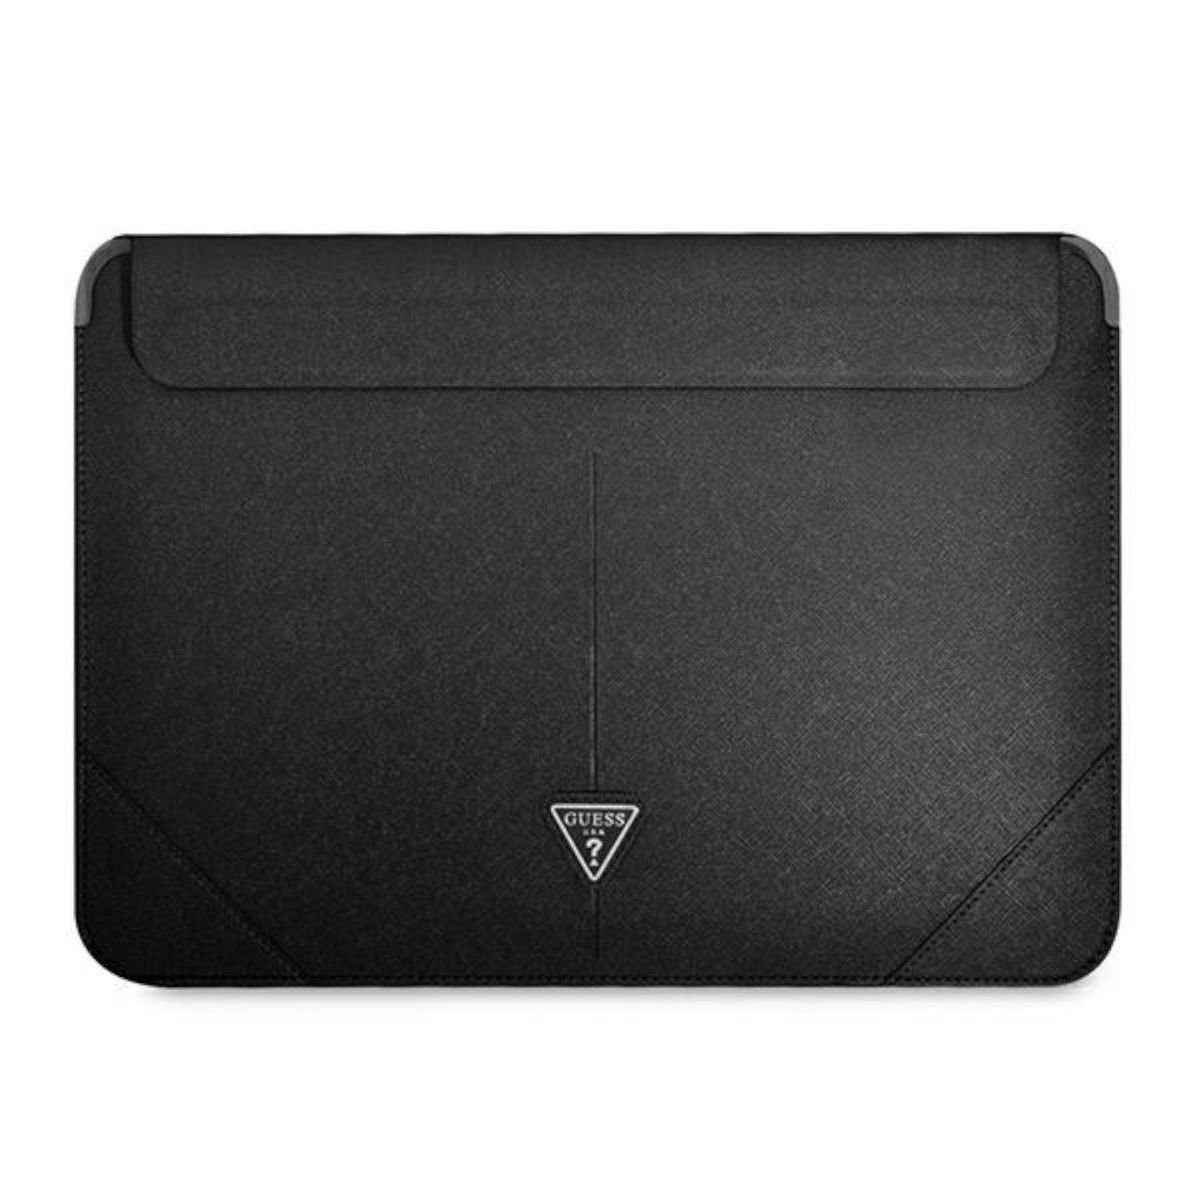 Guess Handyhülle »Guess Universal Notebook Laptop Hülle Tasche Cover  Triangle Collection Schutzhülle 13 / 14 Zoll Schwarz« online kaufen | OTTO